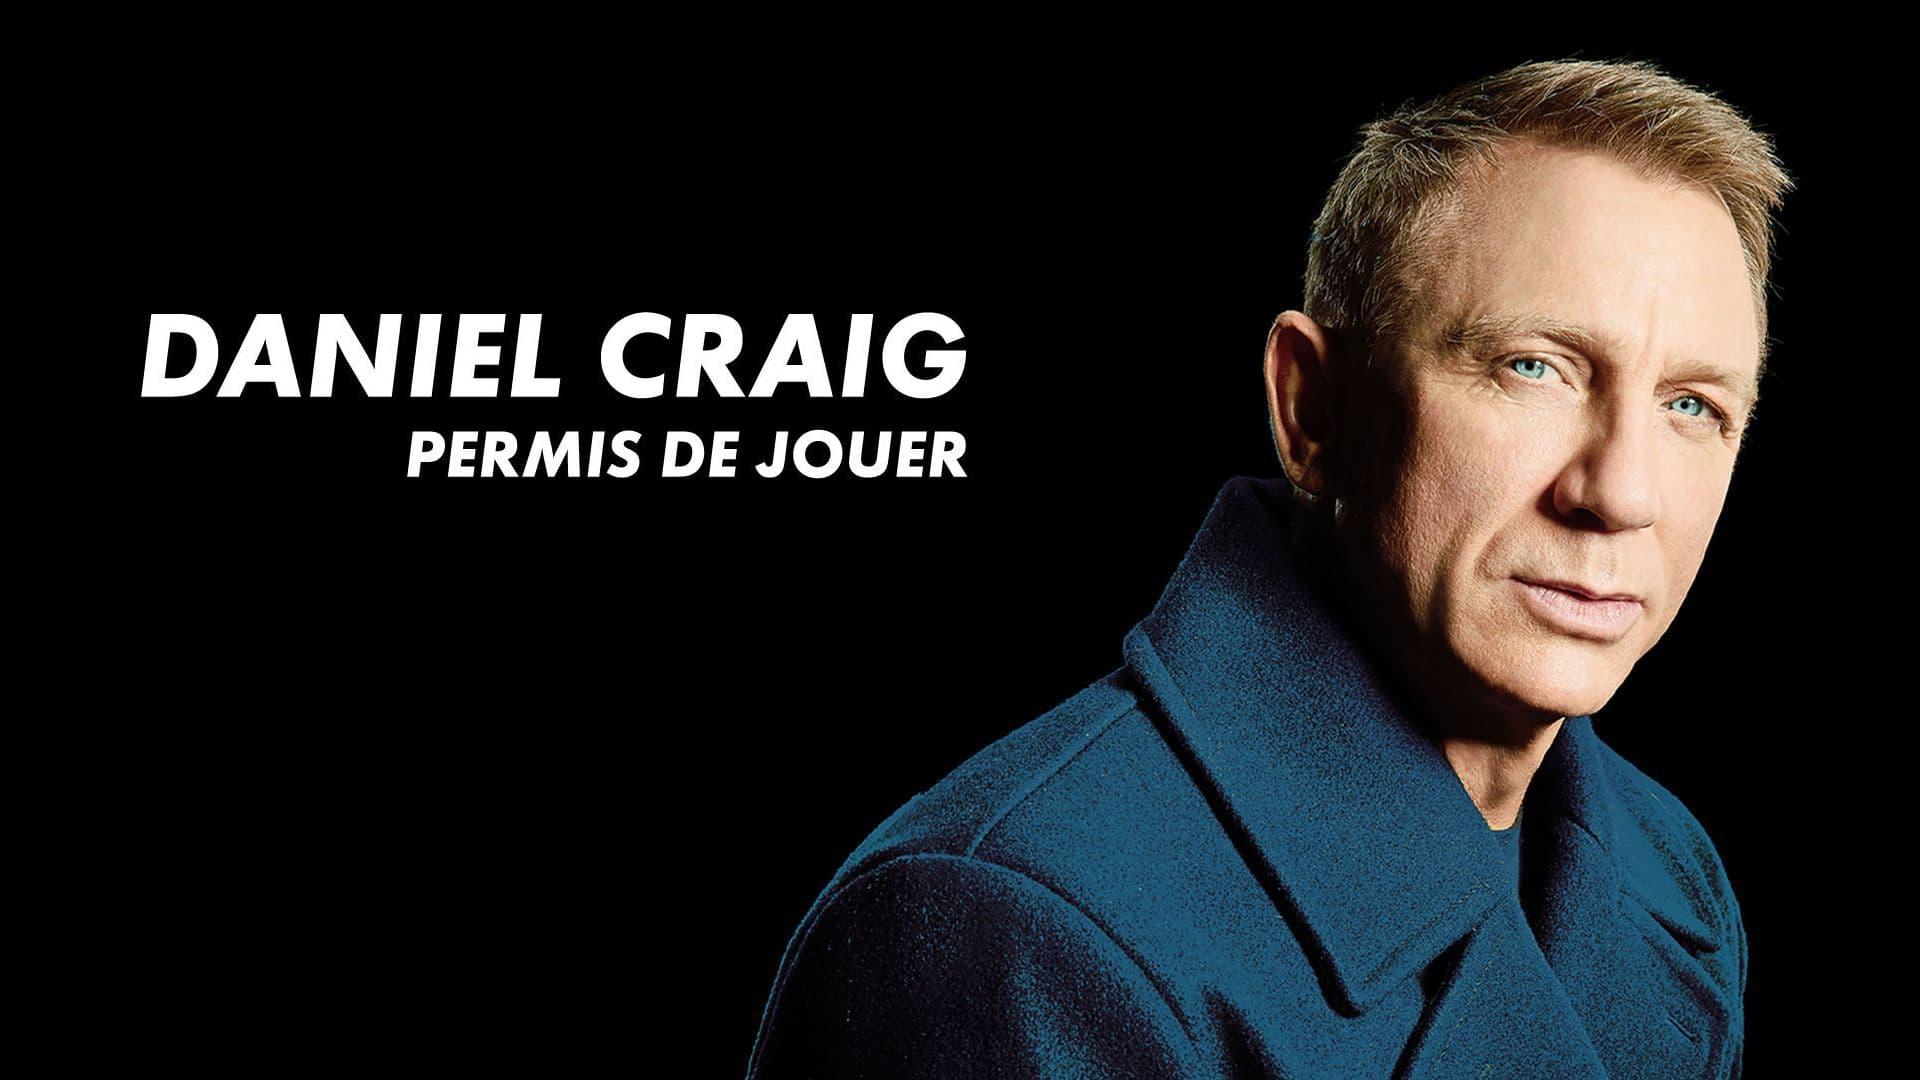 Daniel Craig - Permis de jouer backdrop